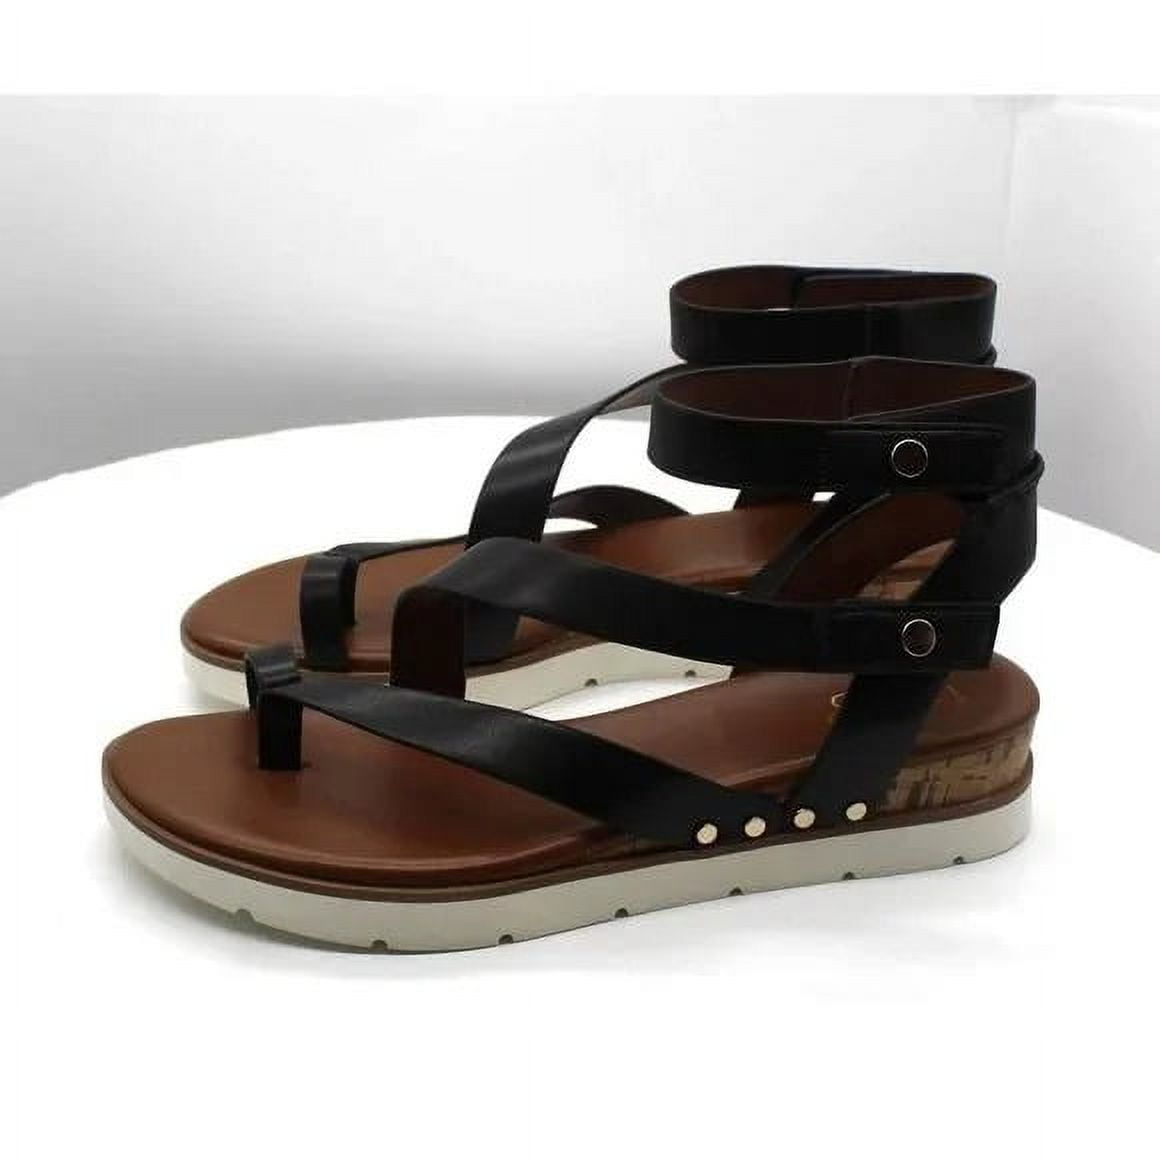 Franco Sarto Daven Gladiator Sandals - Macy's